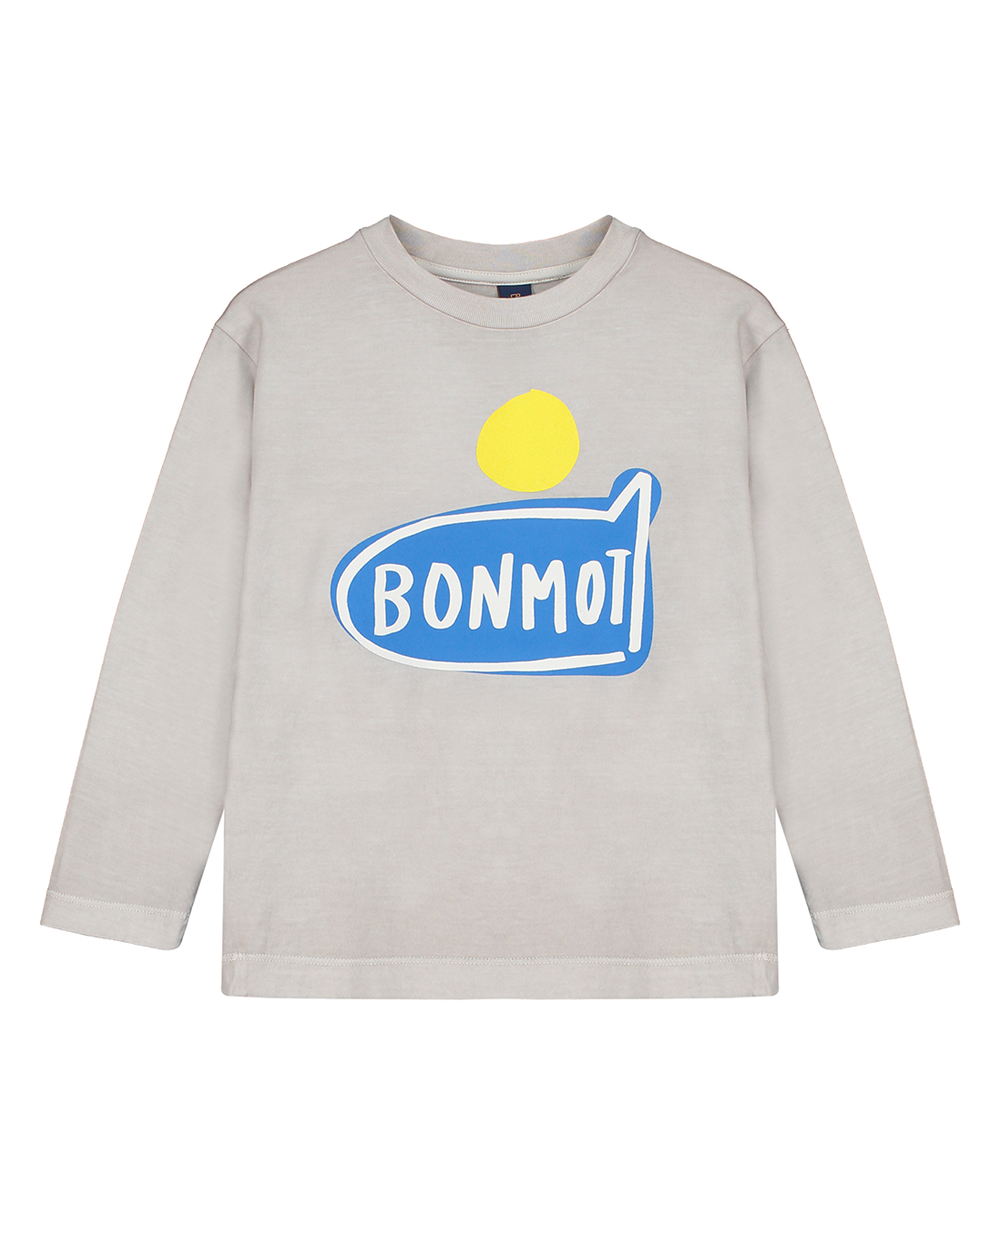 [BONMOT] T-shirt bonmot plane grey [4-5Y, 8-9Y]